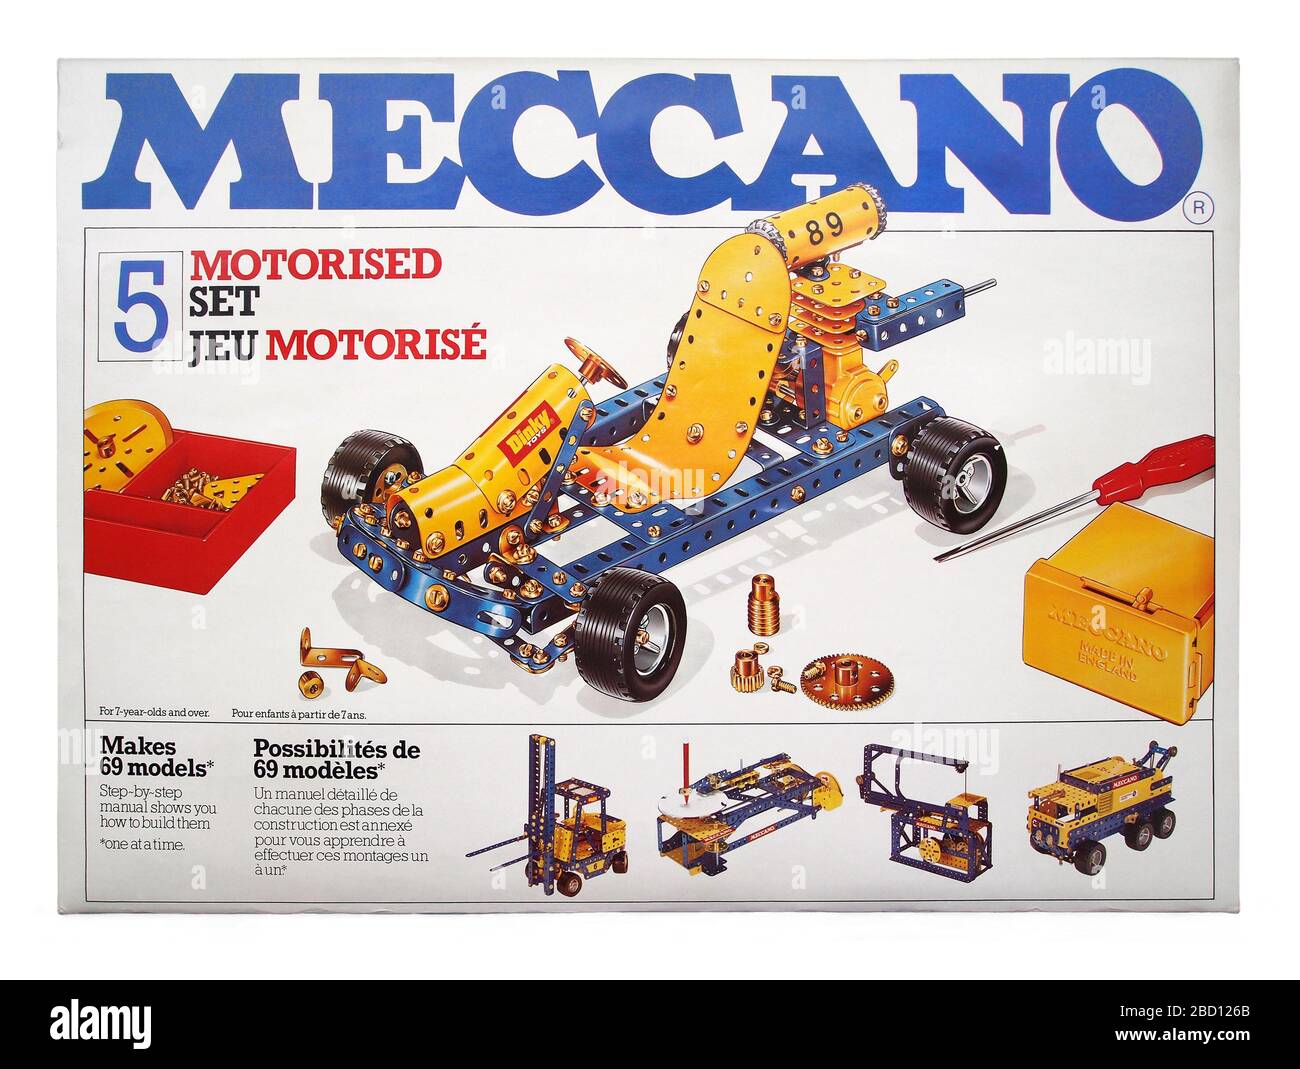 La tapa de la caja de un Meccano de los años 80. El juguete de metal de  construcción es un número 5, un conjunto motorizado. Incluye un go-kart y  una batería amarilla